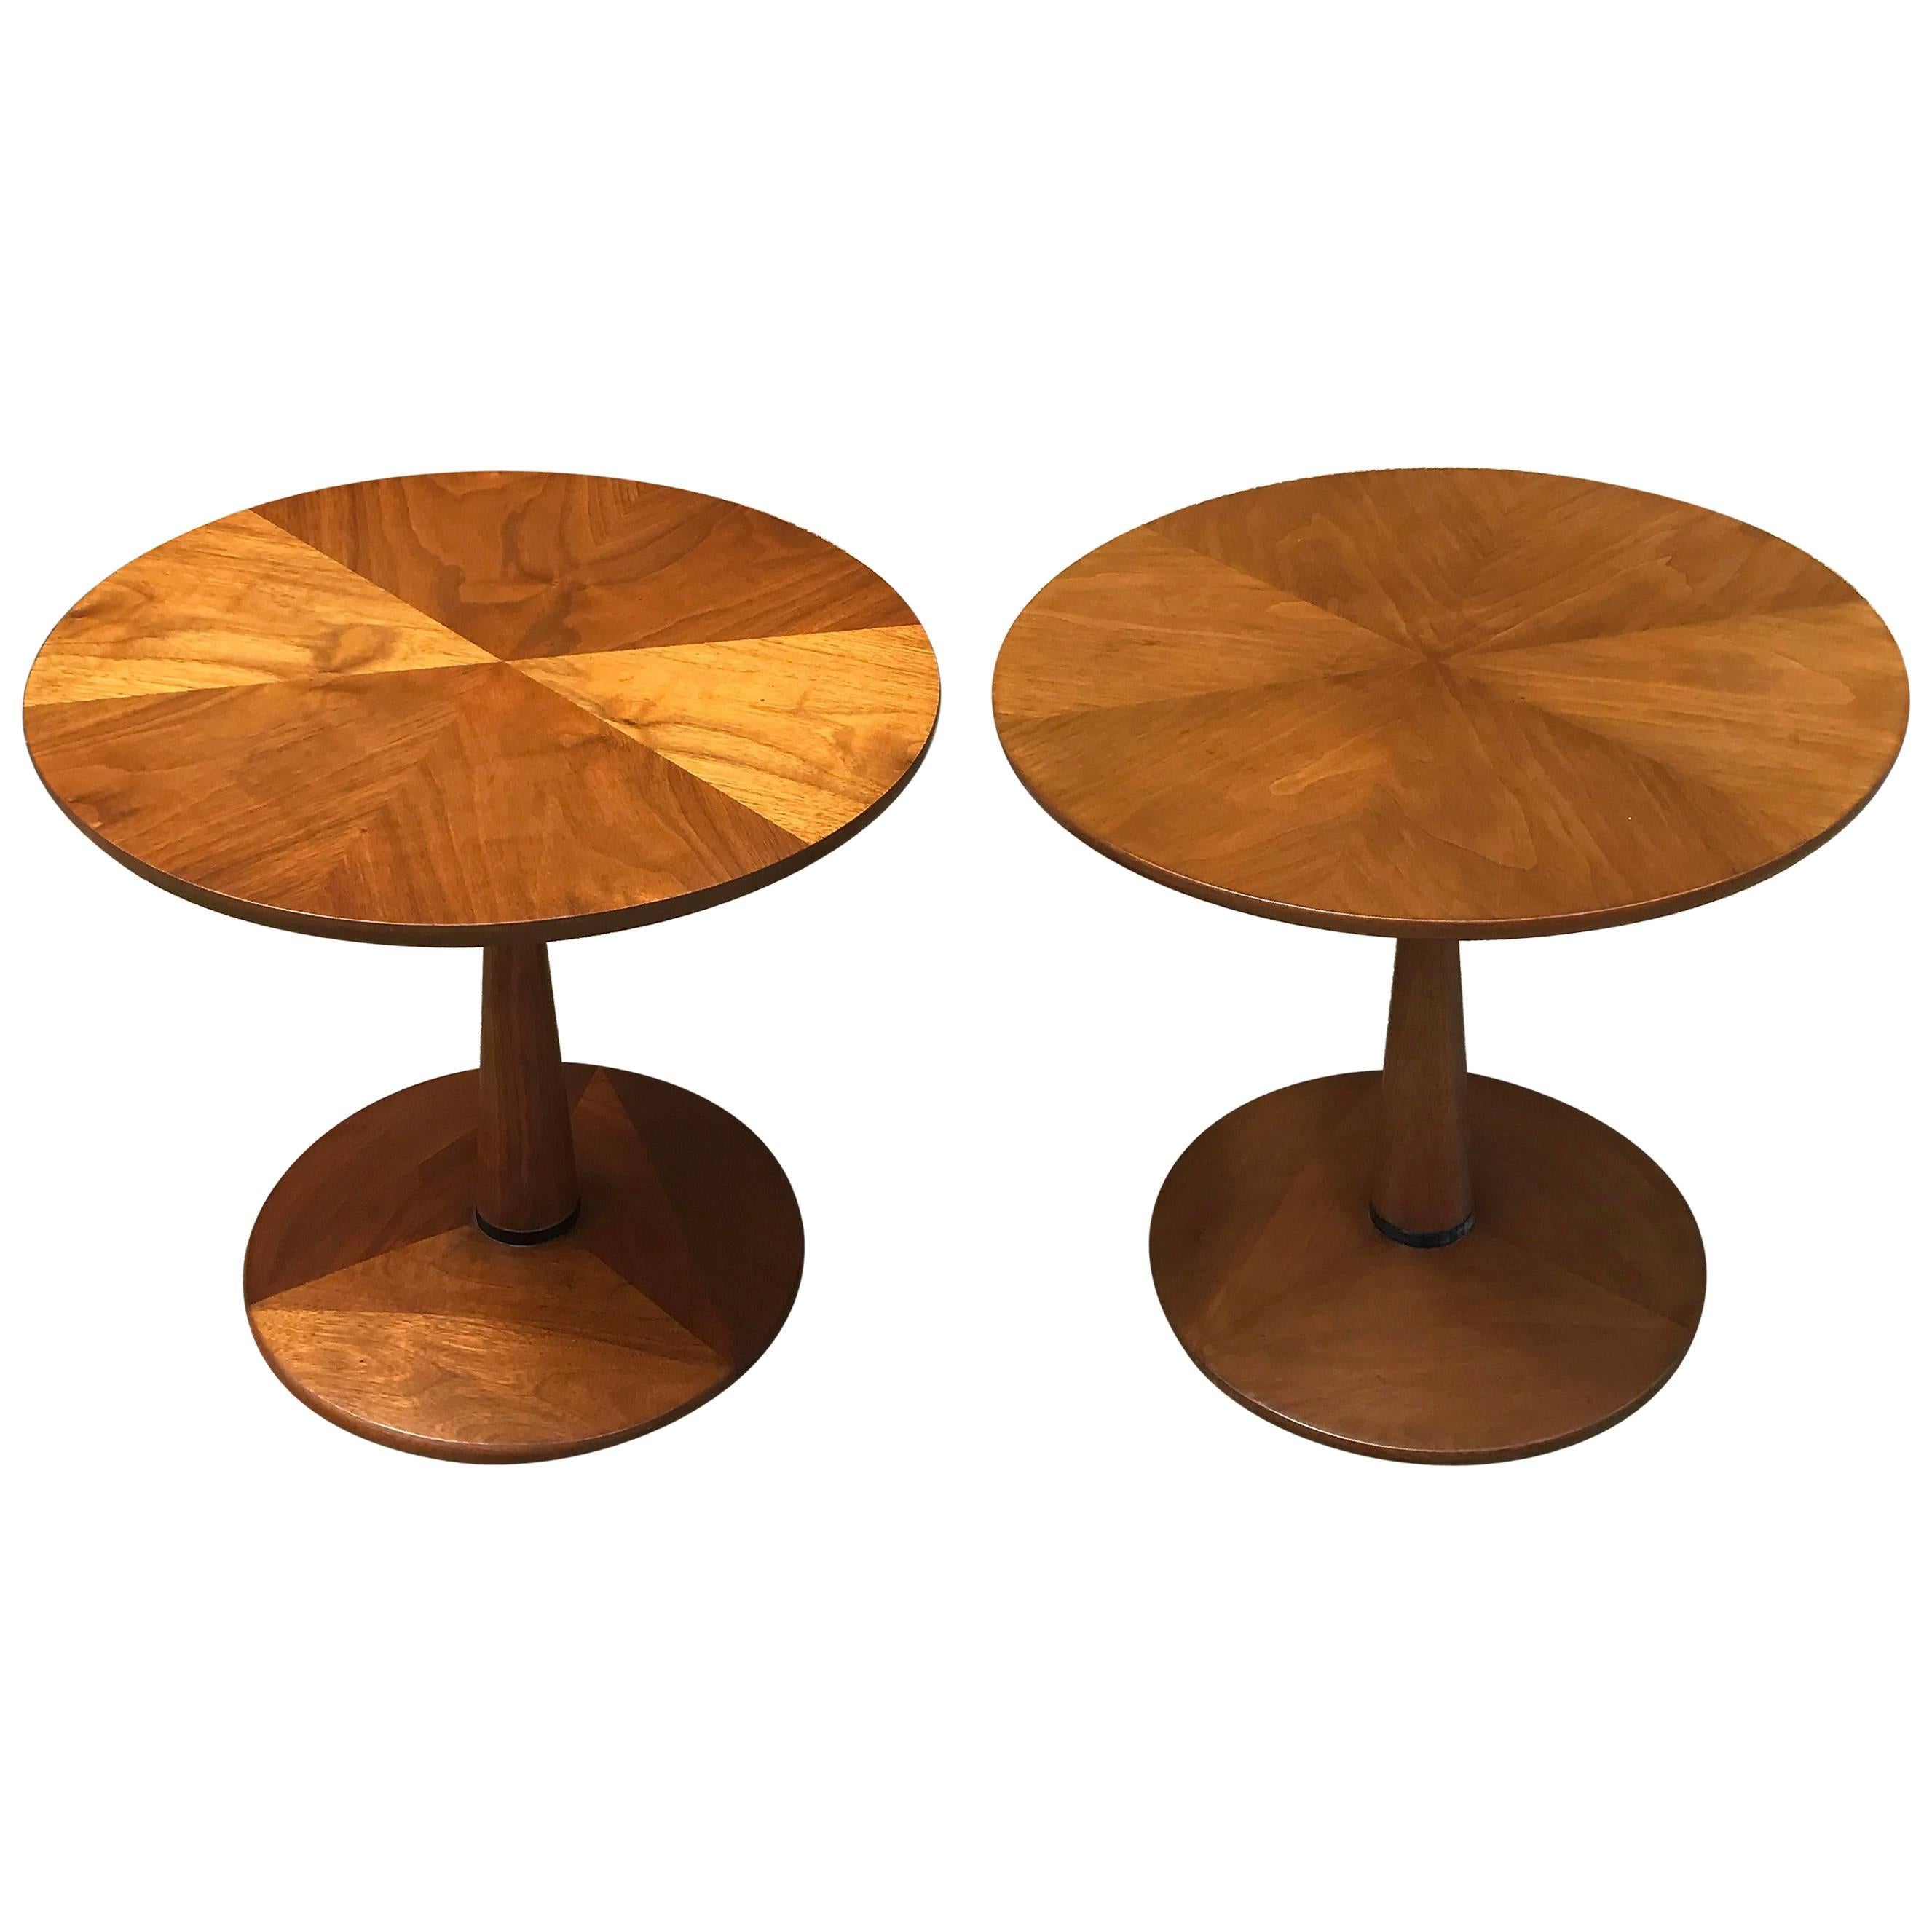 Walnut Pedestal Side Tables by Kipp Stewart for Drexel Declaration